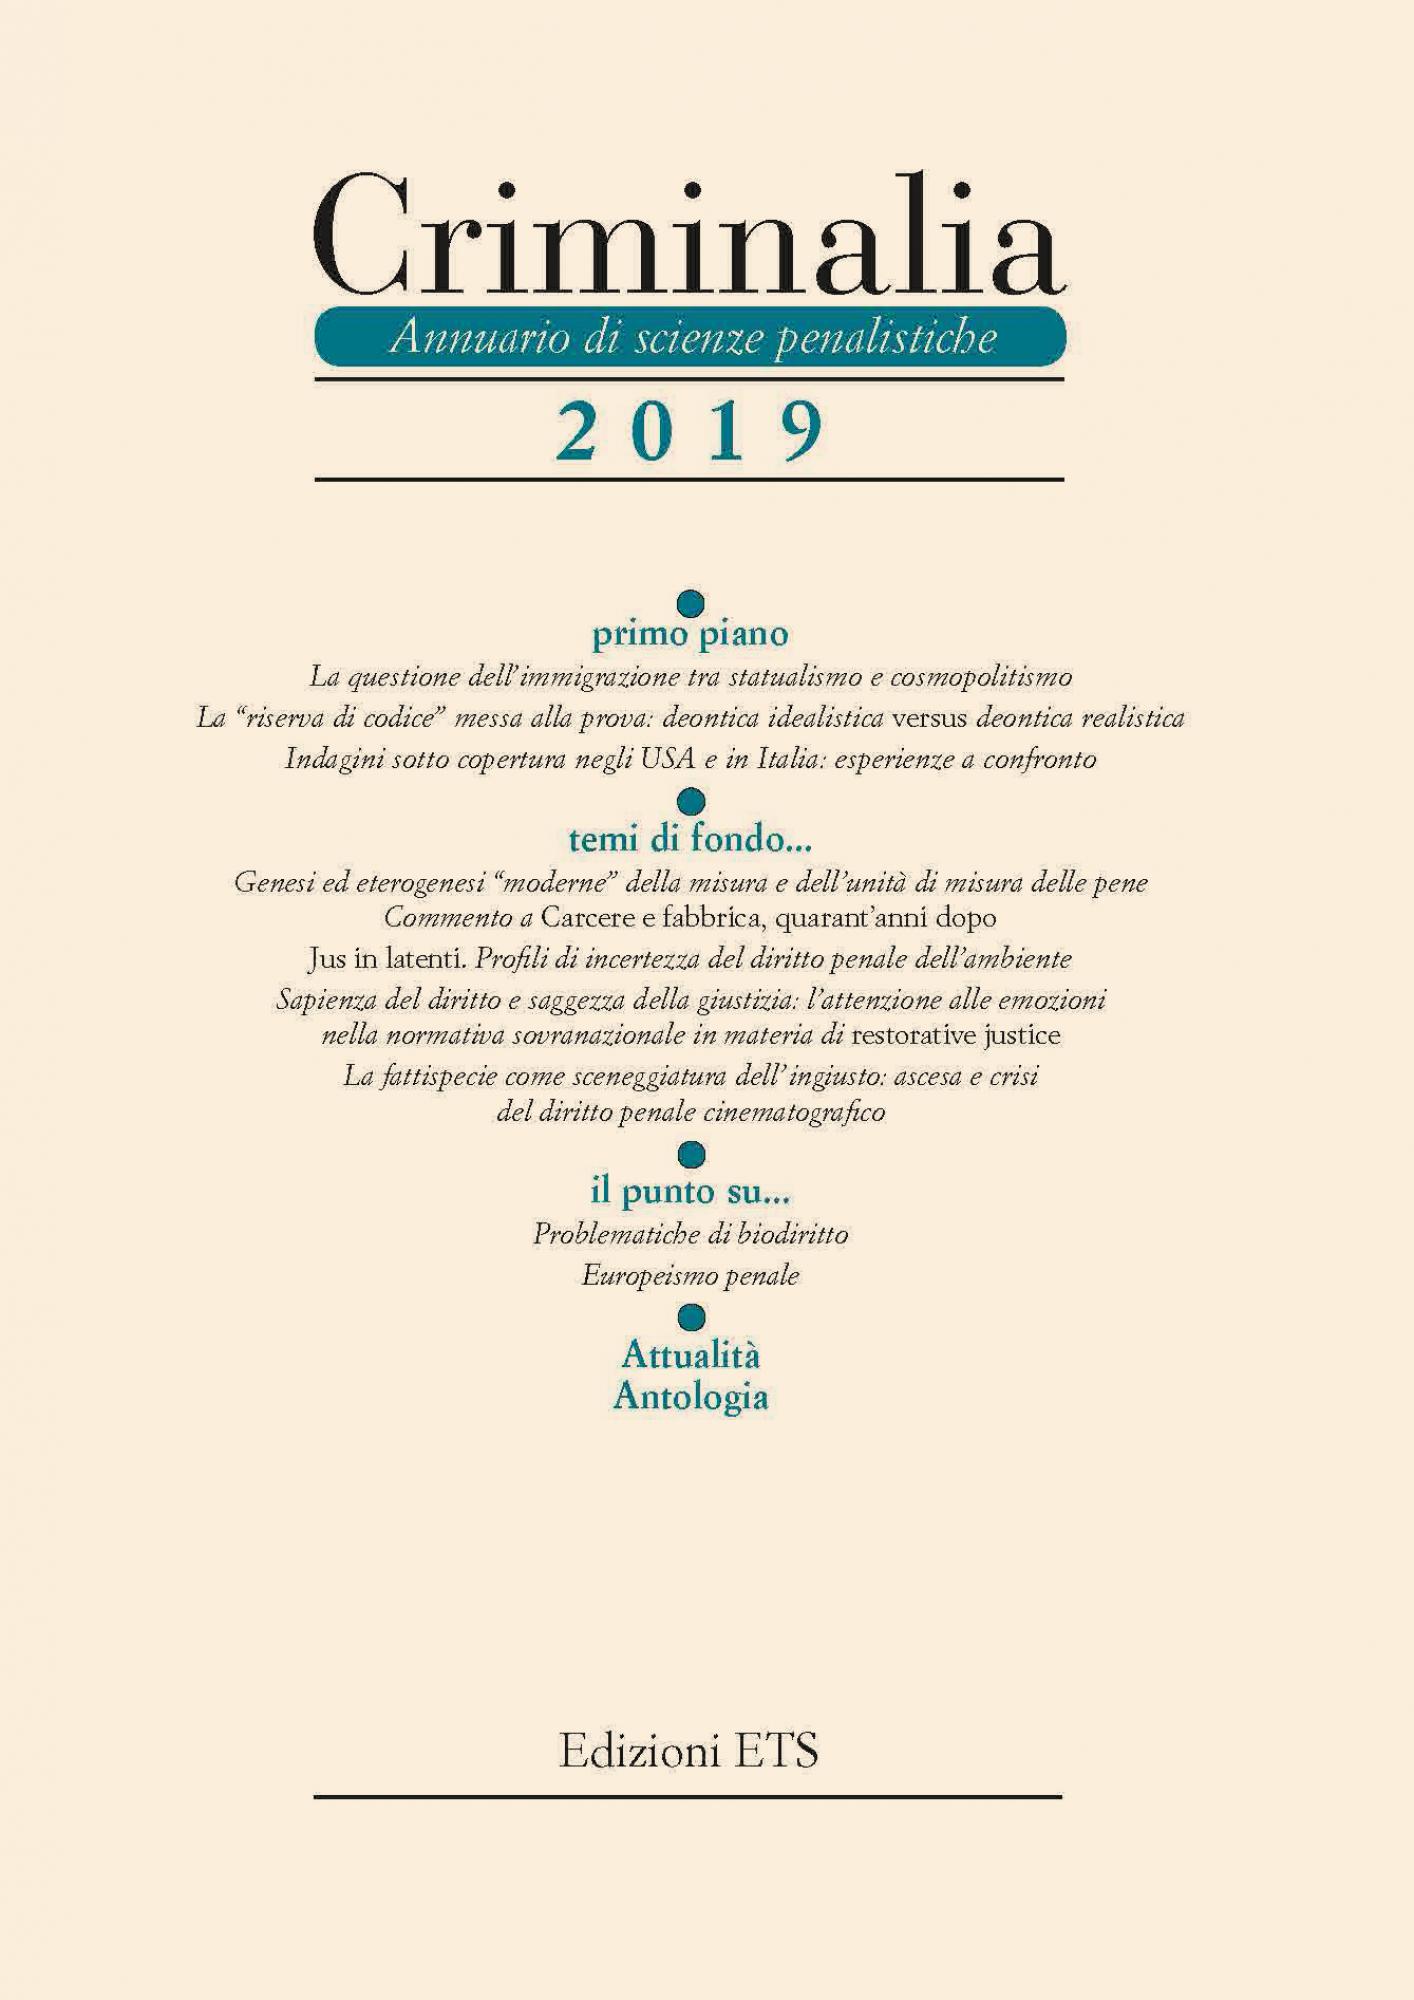 Criminalia 2019.Annuario di scienze penalistiche